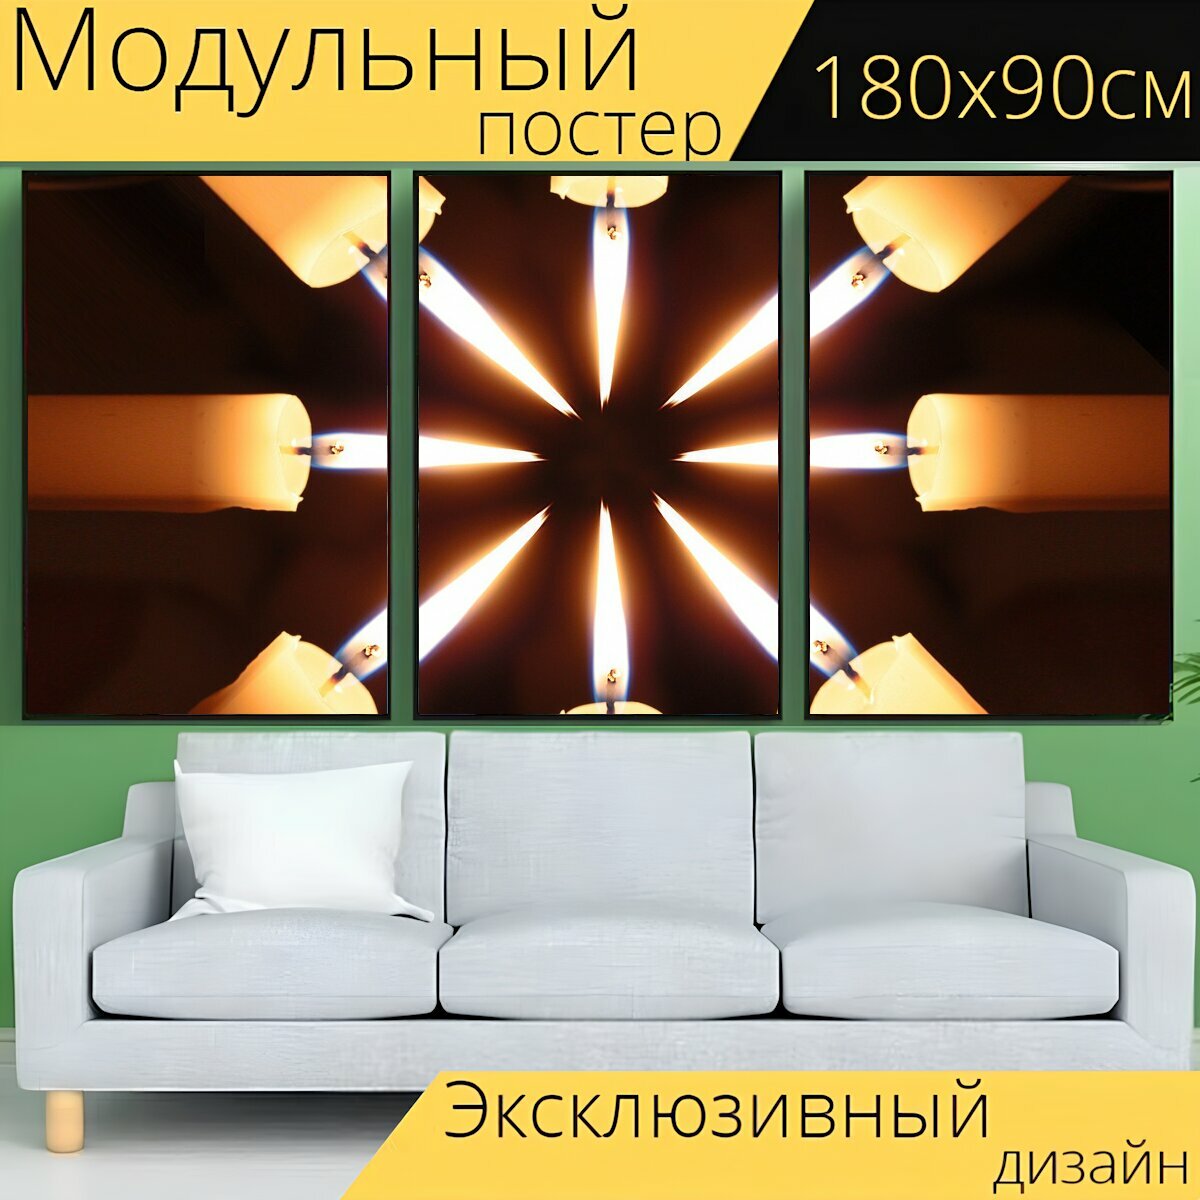 Модульный постер "Свечи, расположение, свет" 180 x 90 см. для интерьера